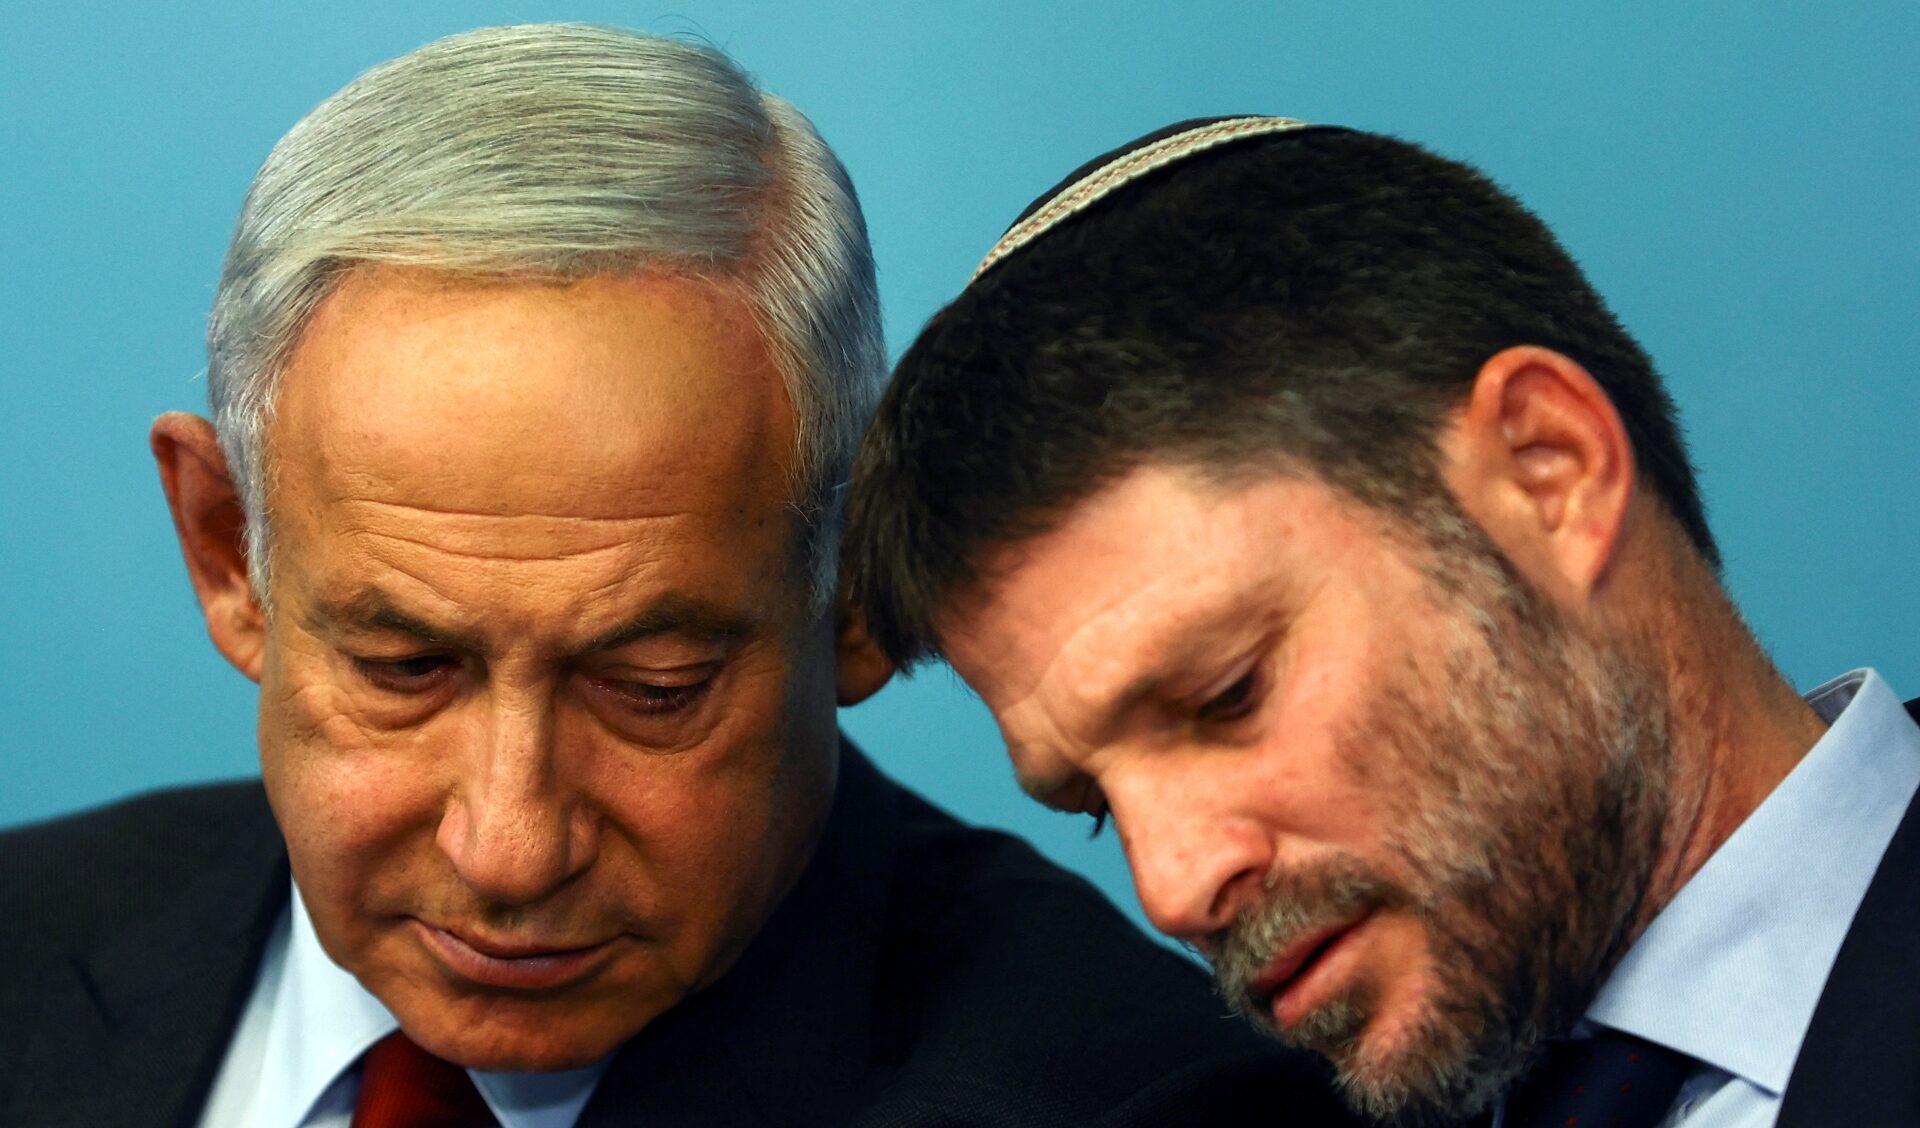 L'estrema destra israeliana vuole entrare nel 'gabinetto di guerra' e chiede una linea più dura